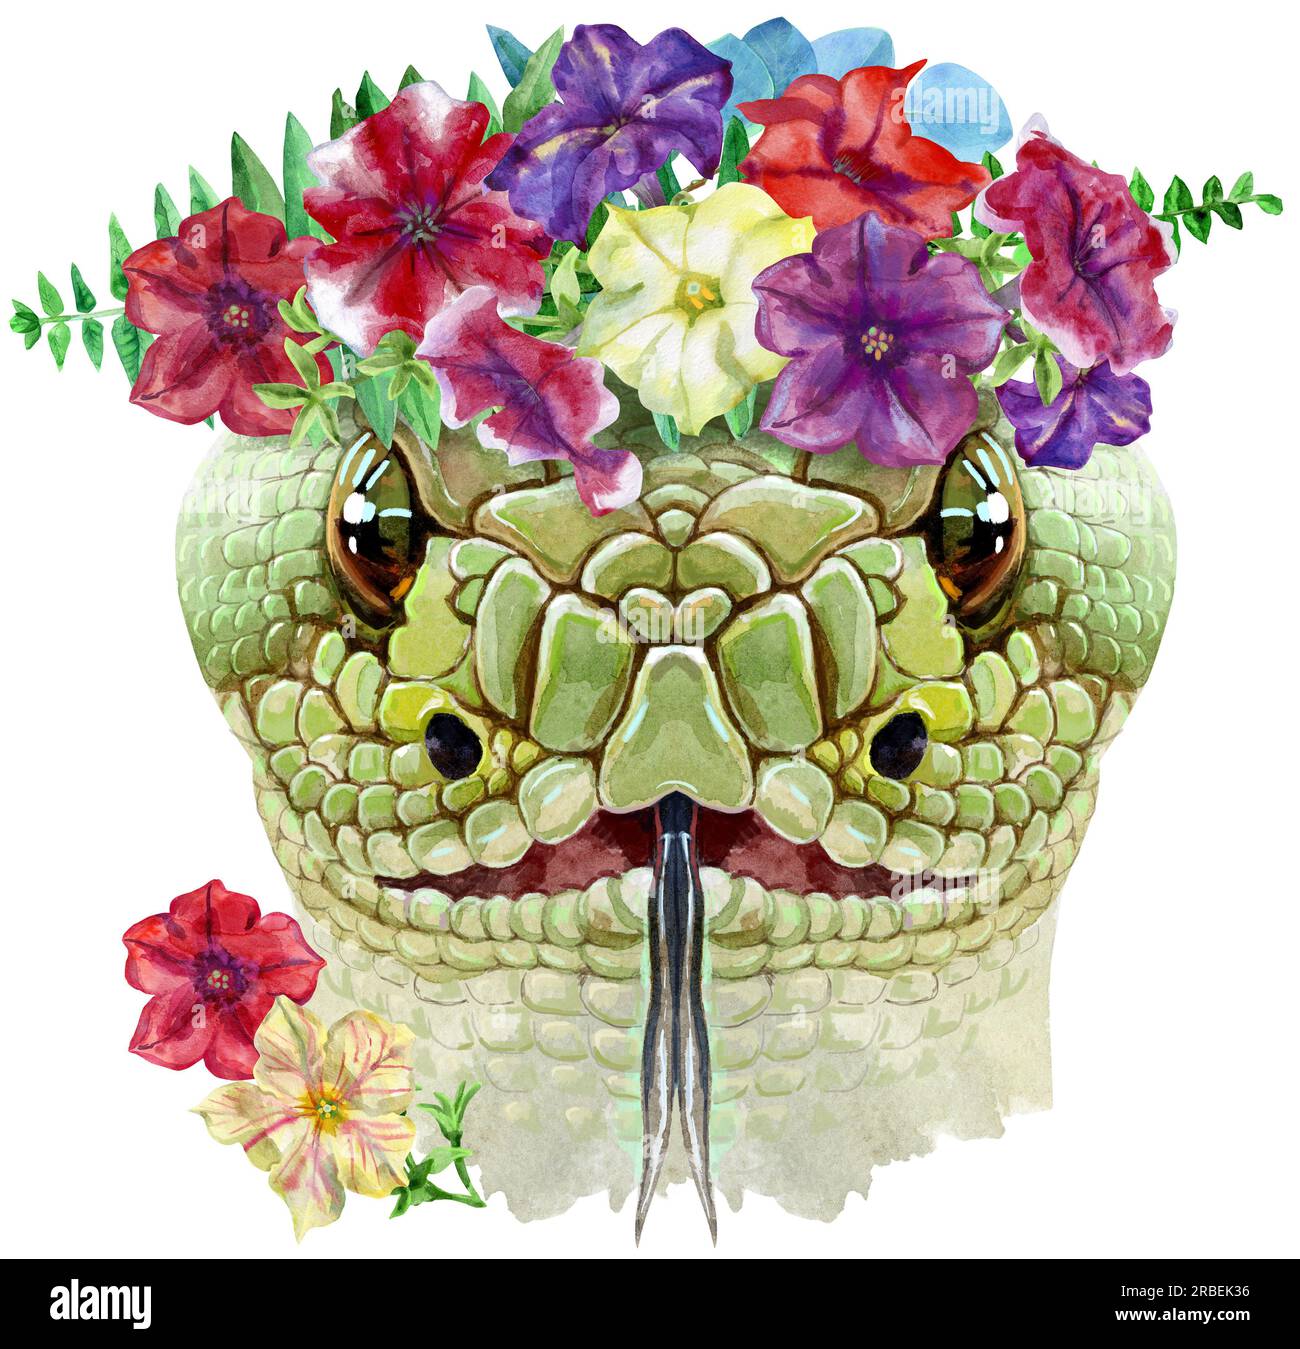 Testa di serpente in una corona di petunie isolata su sfondo bianco. Illustrazione ad acquerello del rettile verde. Foto Stock